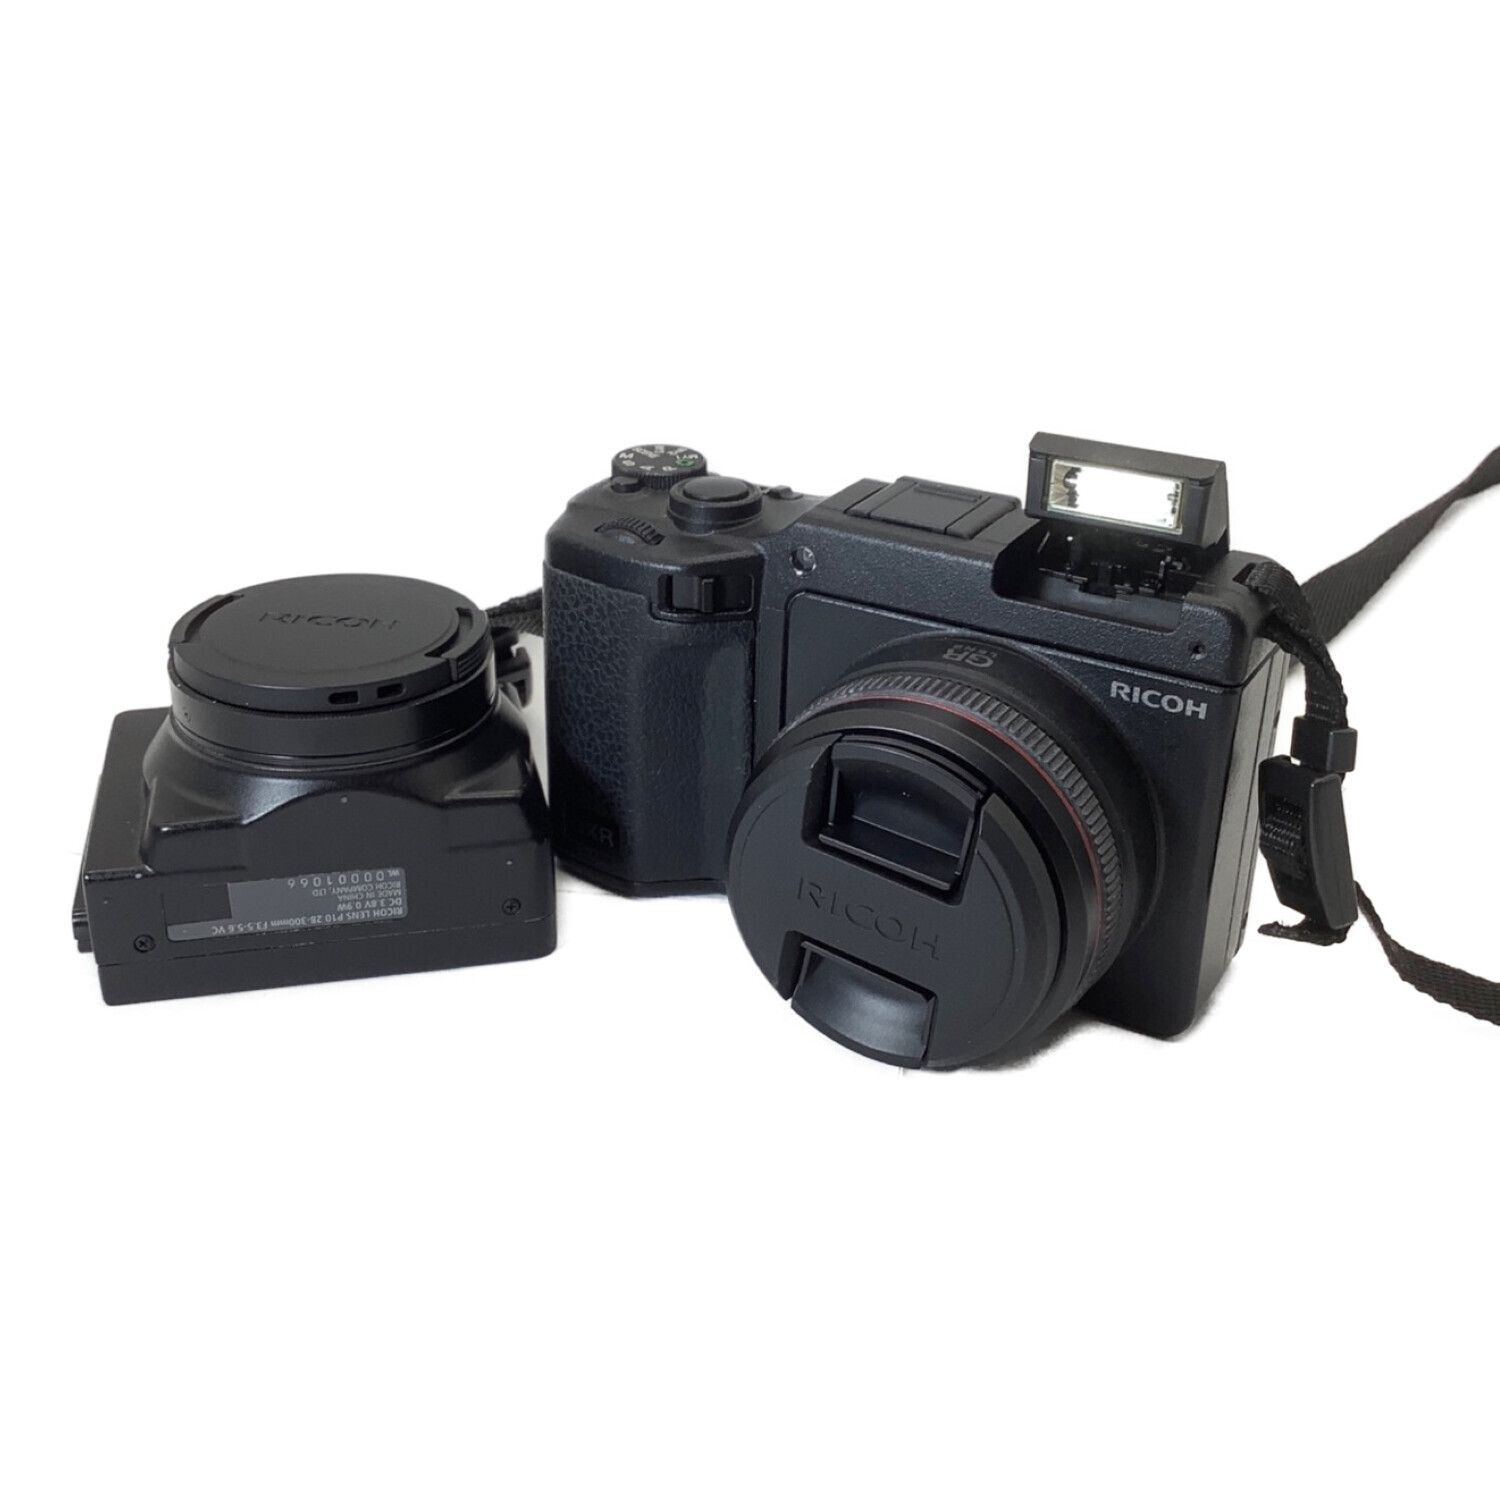 RICOH (リコー) コンパクトデジタルカメラ P10 A12 セット フラッシュ